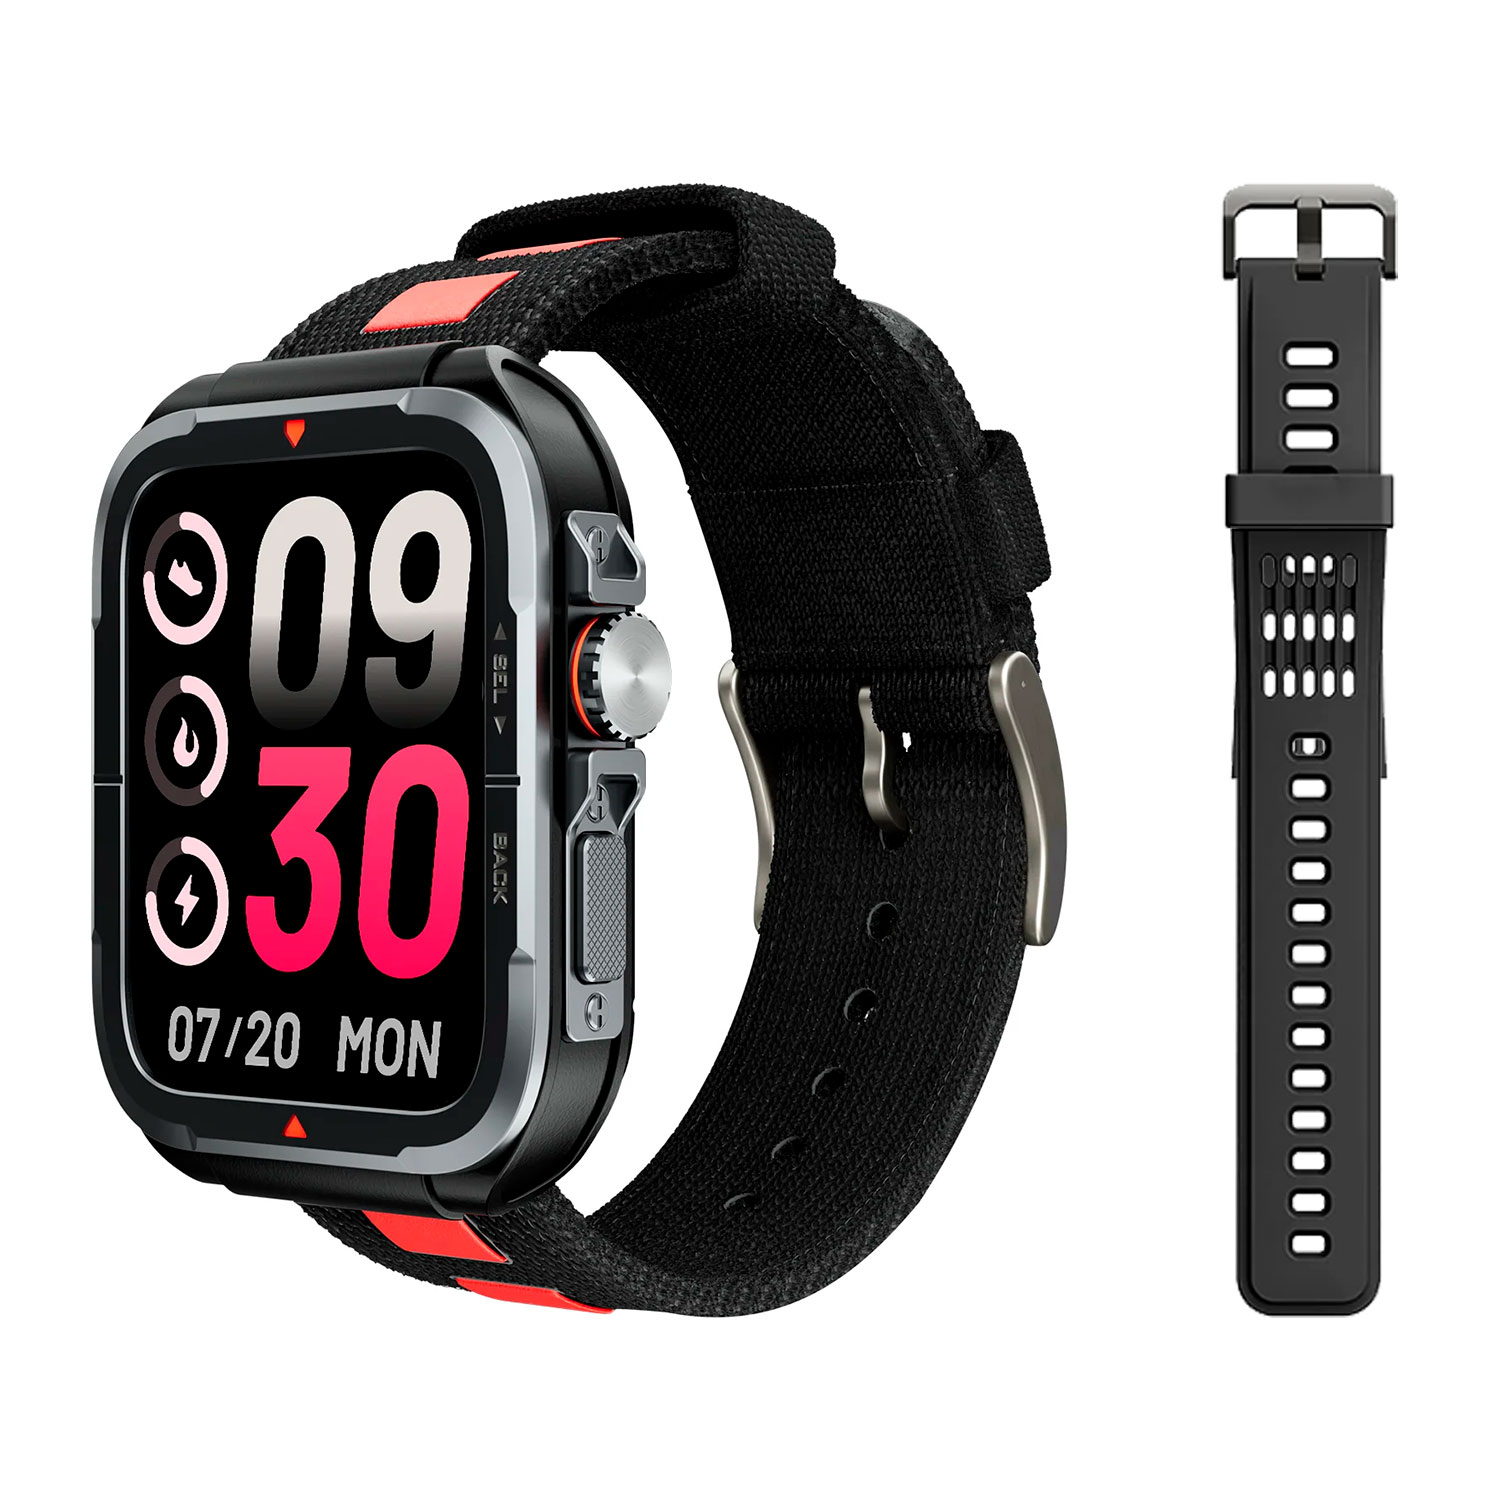 Smartwatch Udfine Watch GT Alexa - Preto